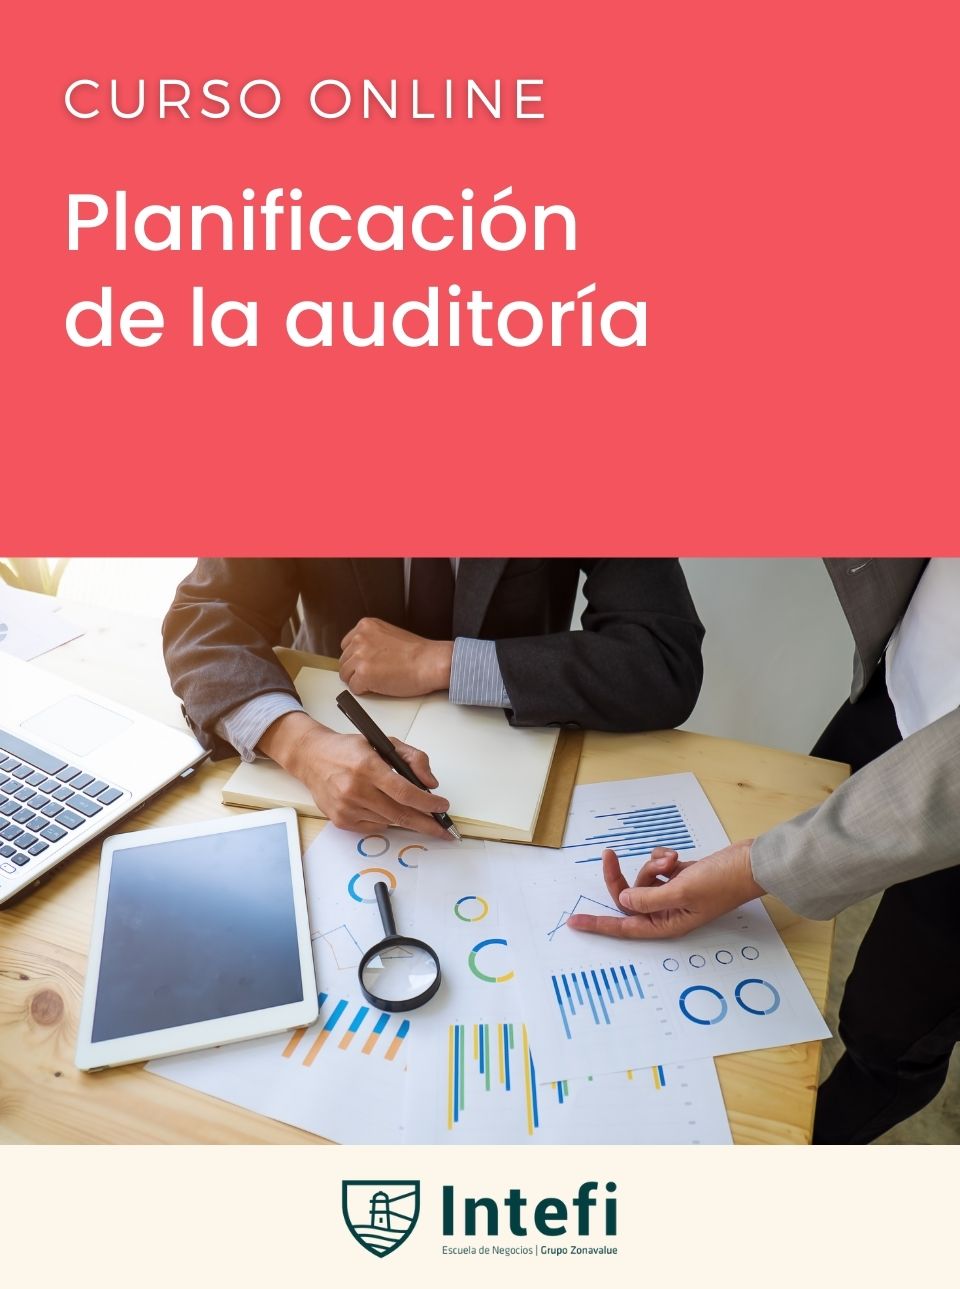 Curso de planificación de la auditoría Intefi